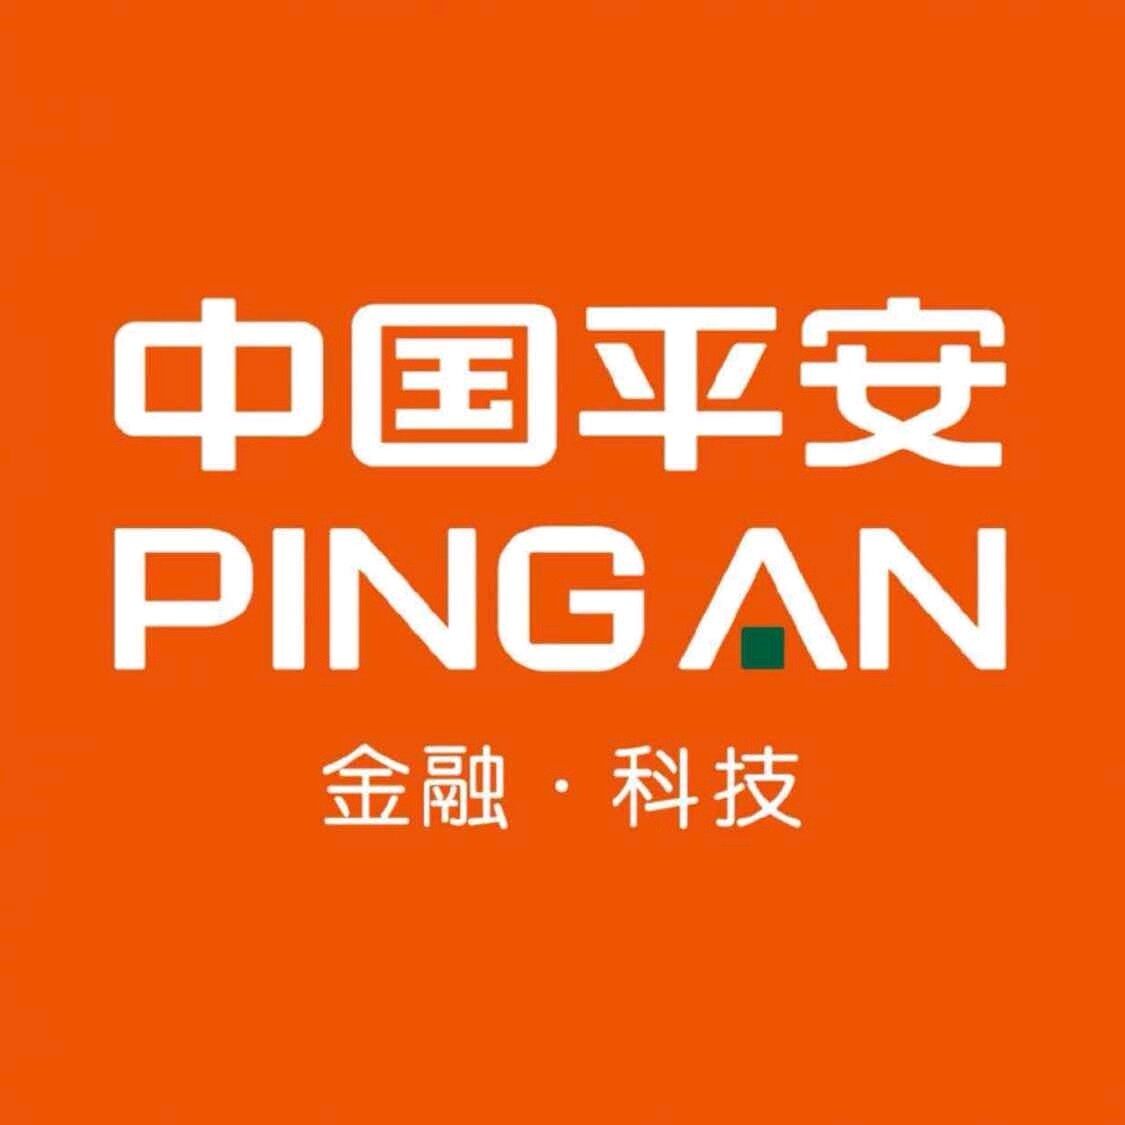 中国平安西安电销中心招聘logo